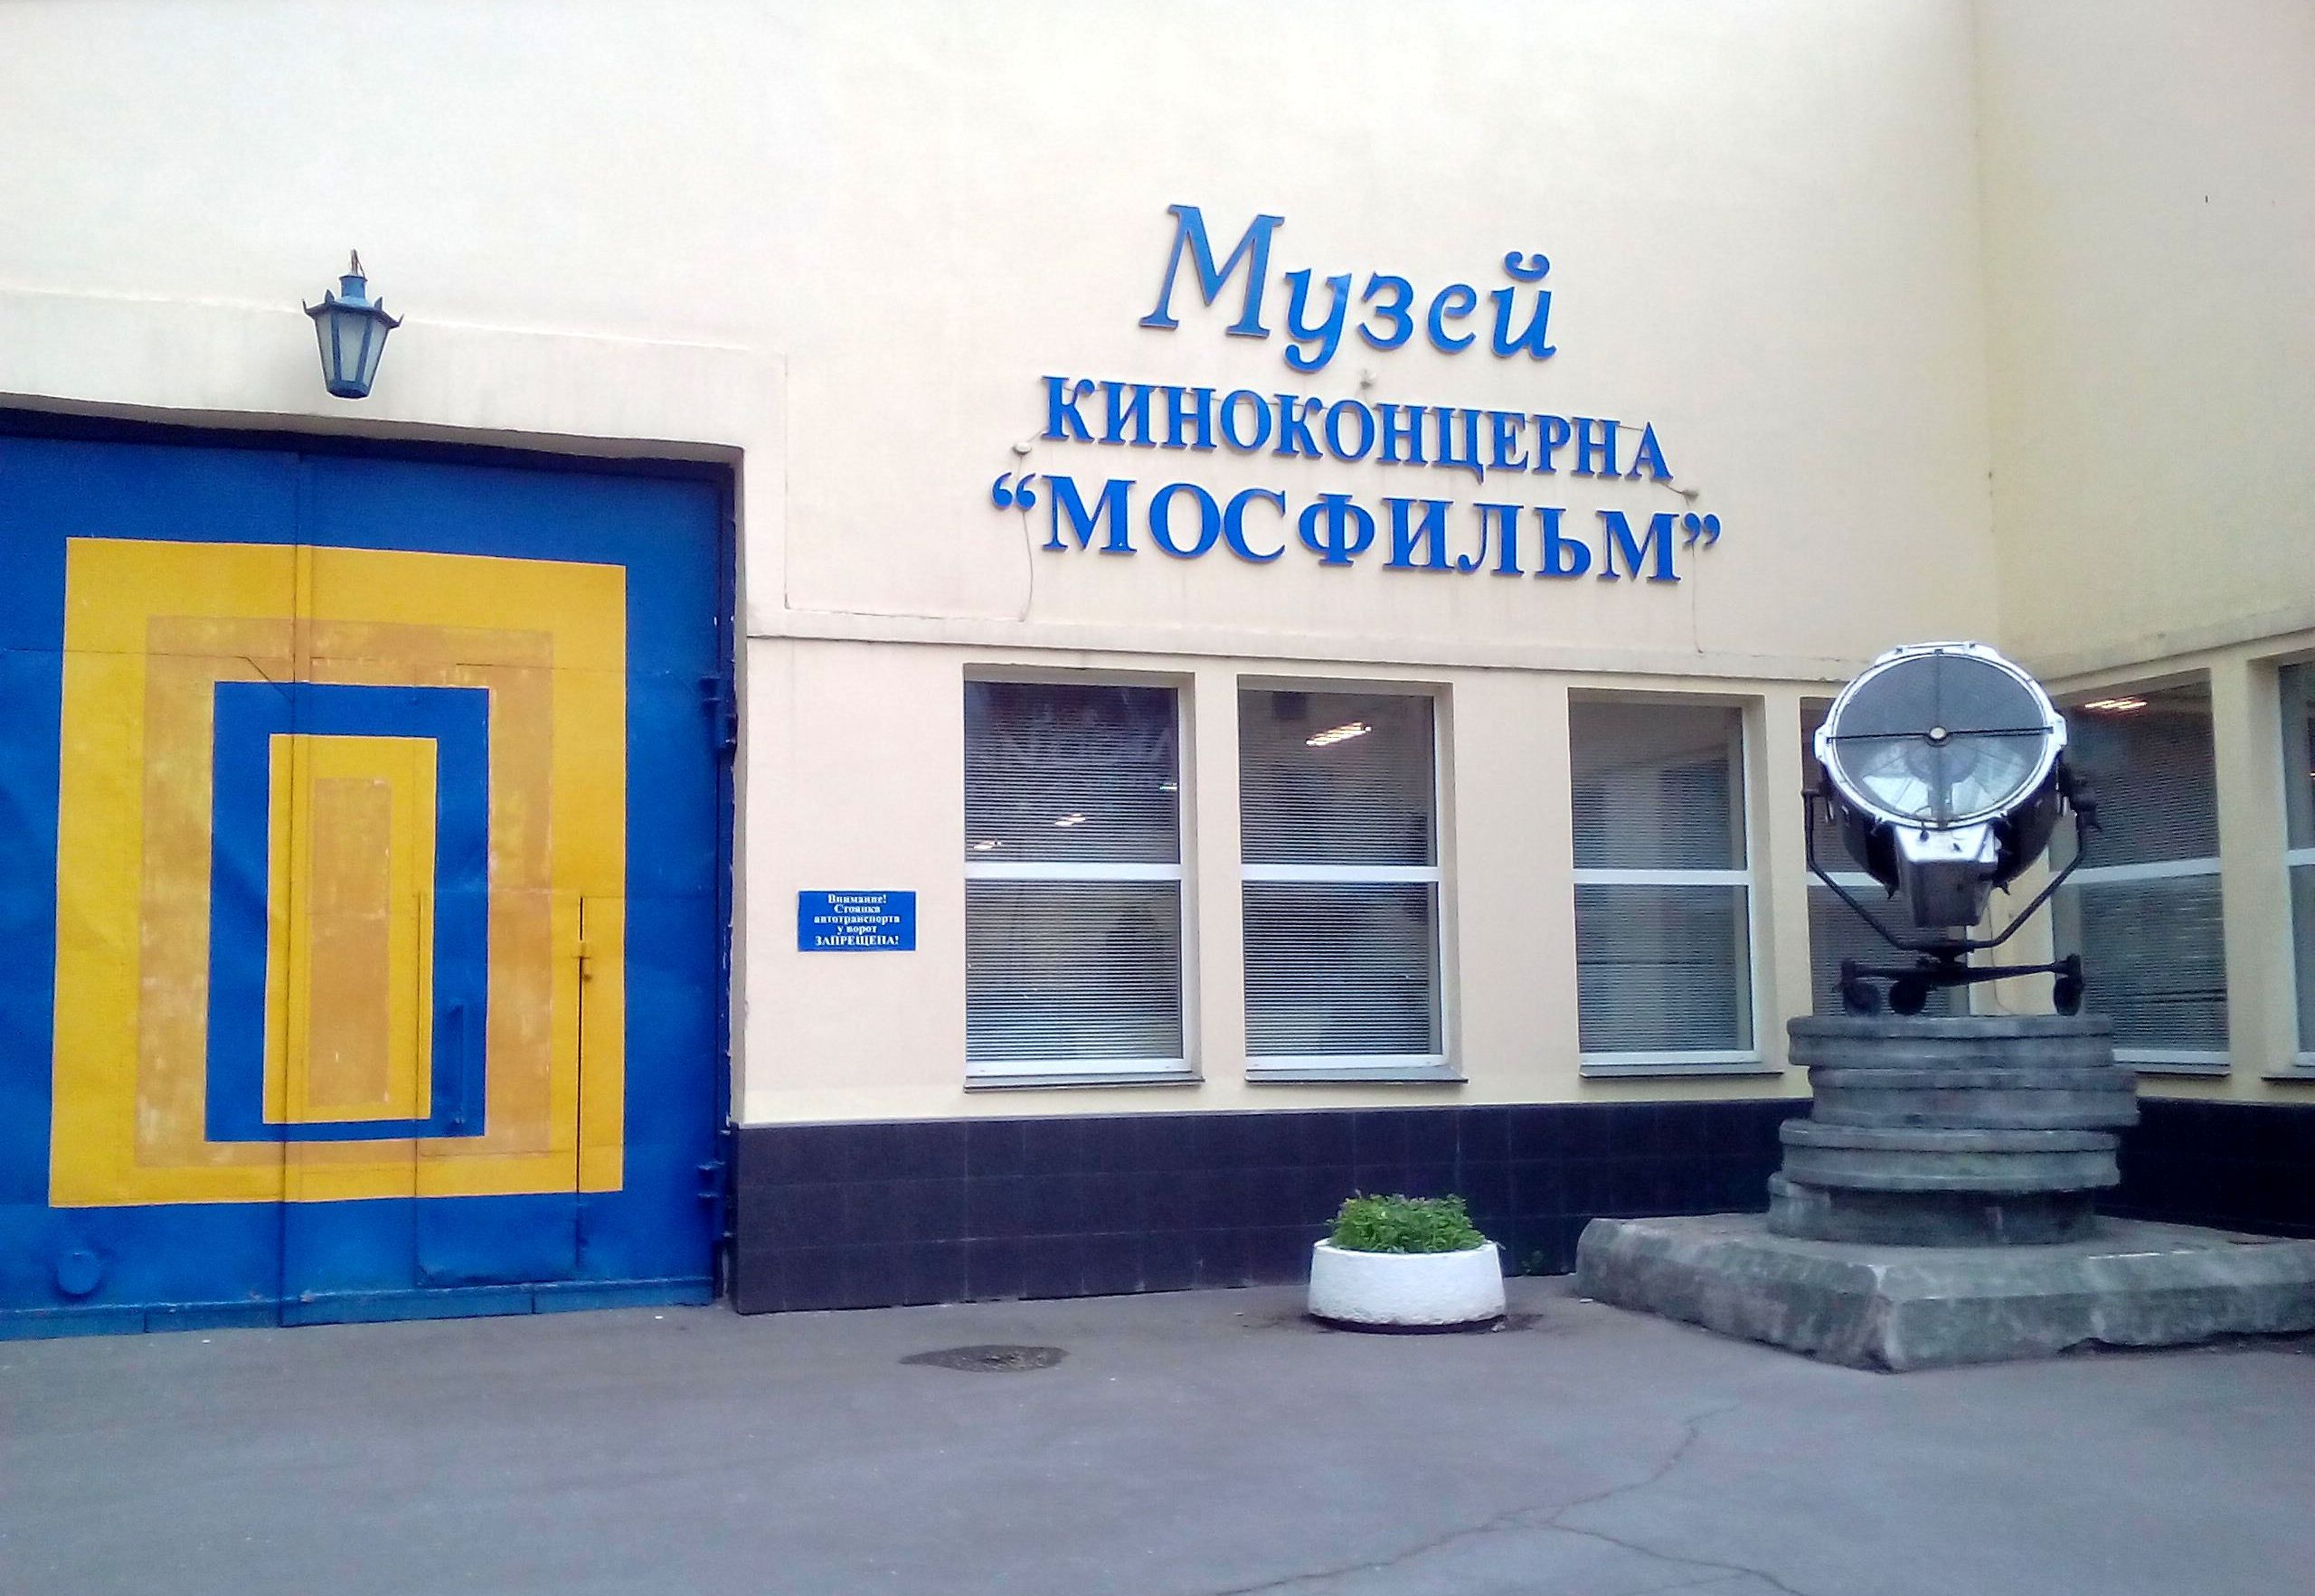 Мосфильм музей официальный сайт